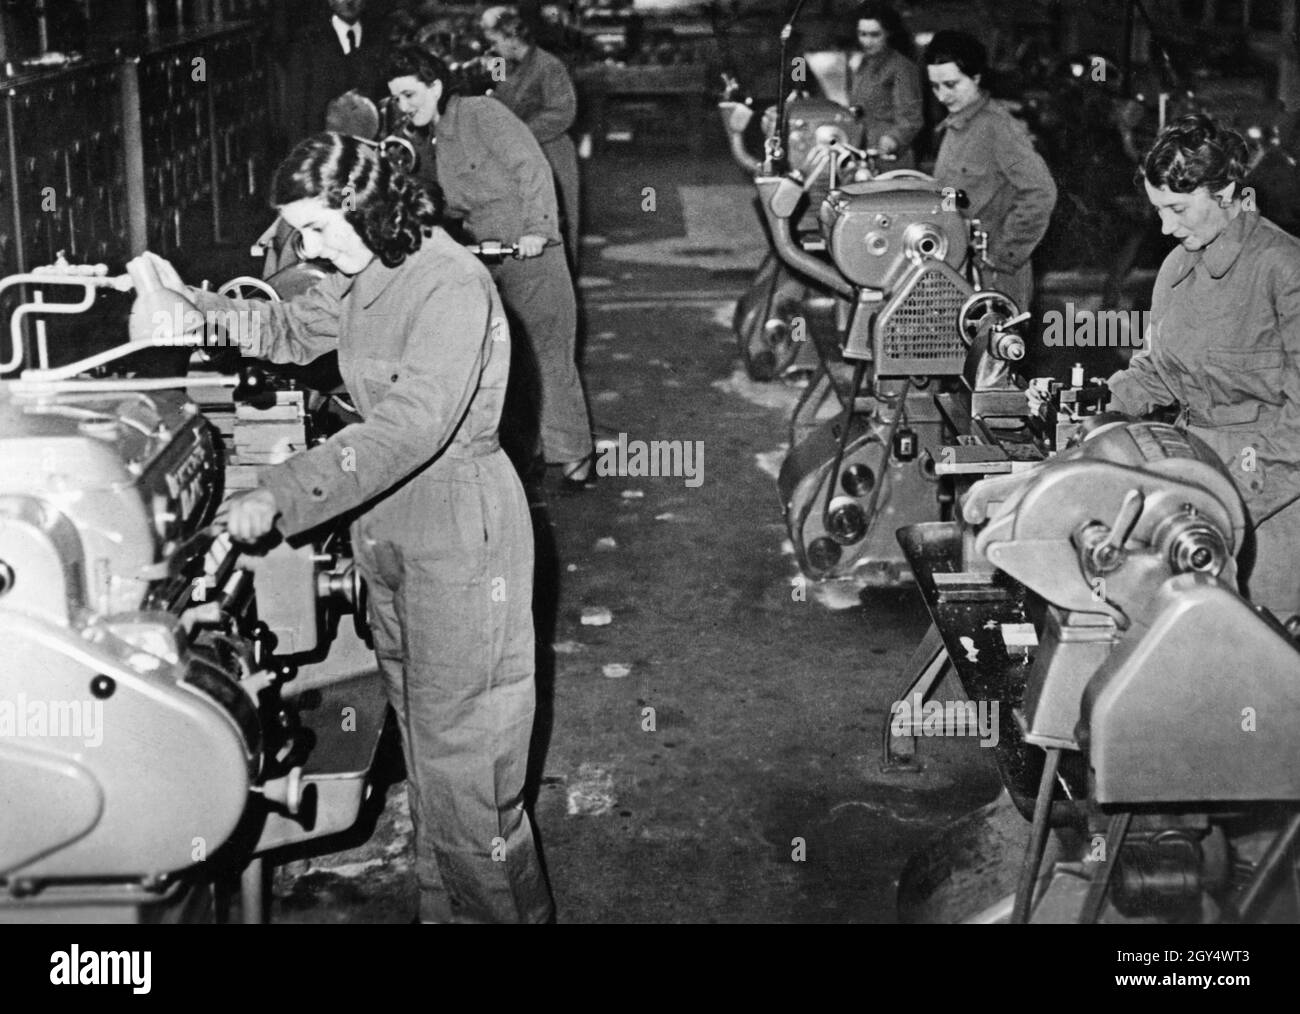 En Italie aussi, pendant la Seconde Guerre mondiale, de nombreuses femmes  ont occupé des emplois qui étaient auparavant majoritairement occupés par  des hommes.Cela a été déclenché par la pénurie de main-d'œuvre causée